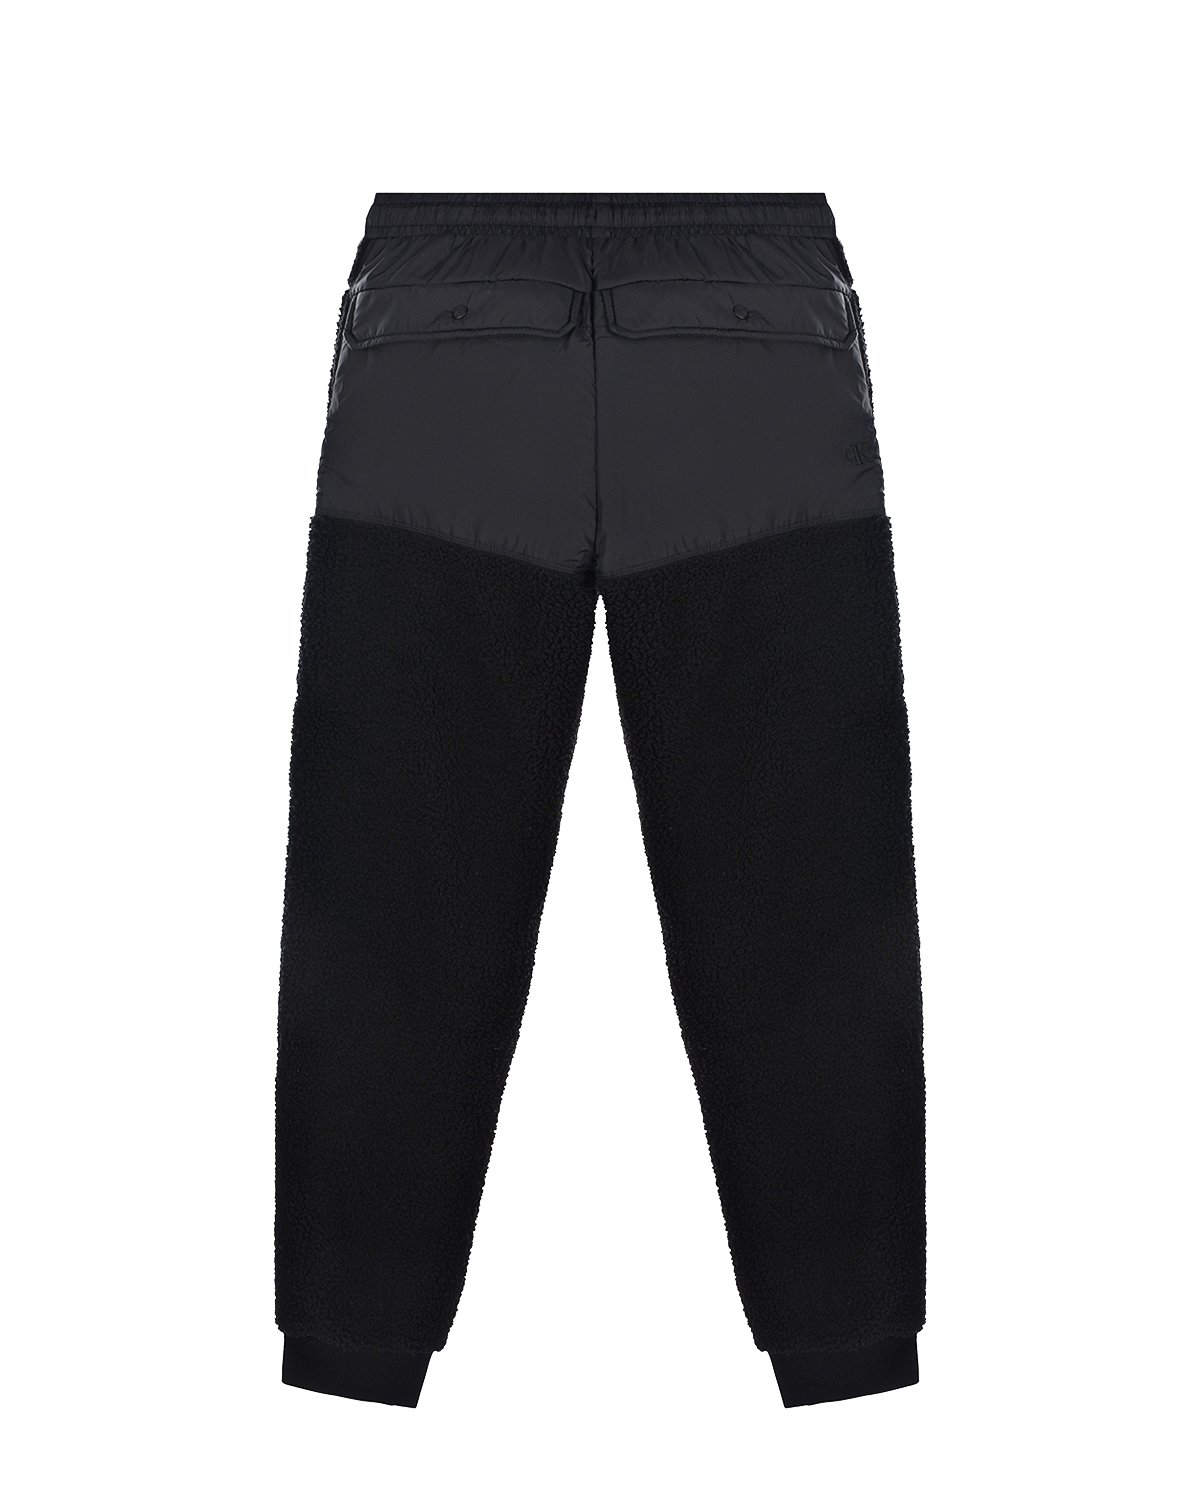 Черные спортивные брюки Calvin Klein детские, размер 164, цвет черный - фото 2